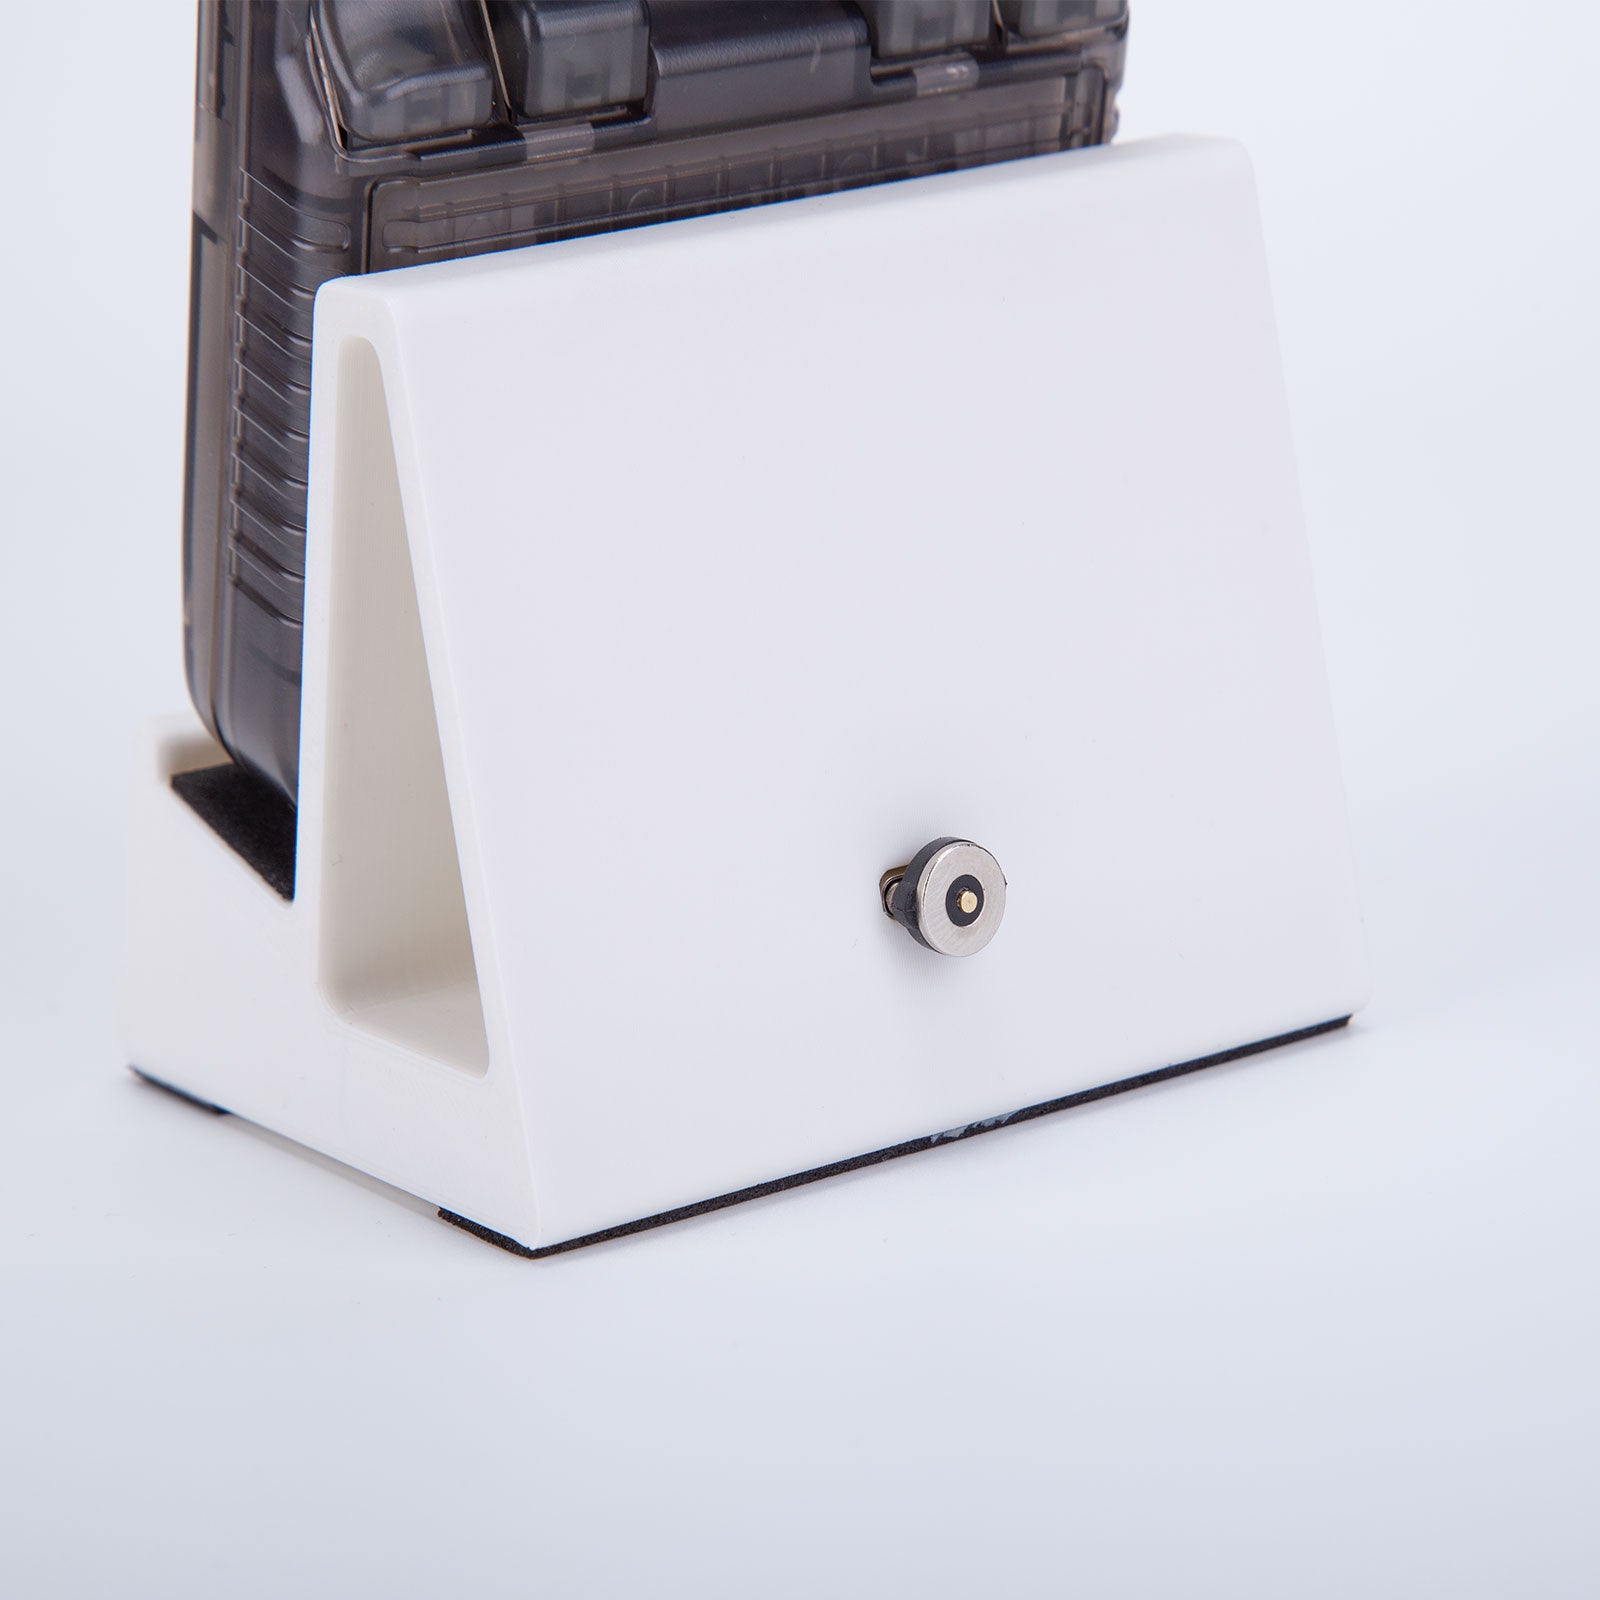 3D Printed Magnetic Charging Dock for Miyoo Mini Plus - Mechdiy